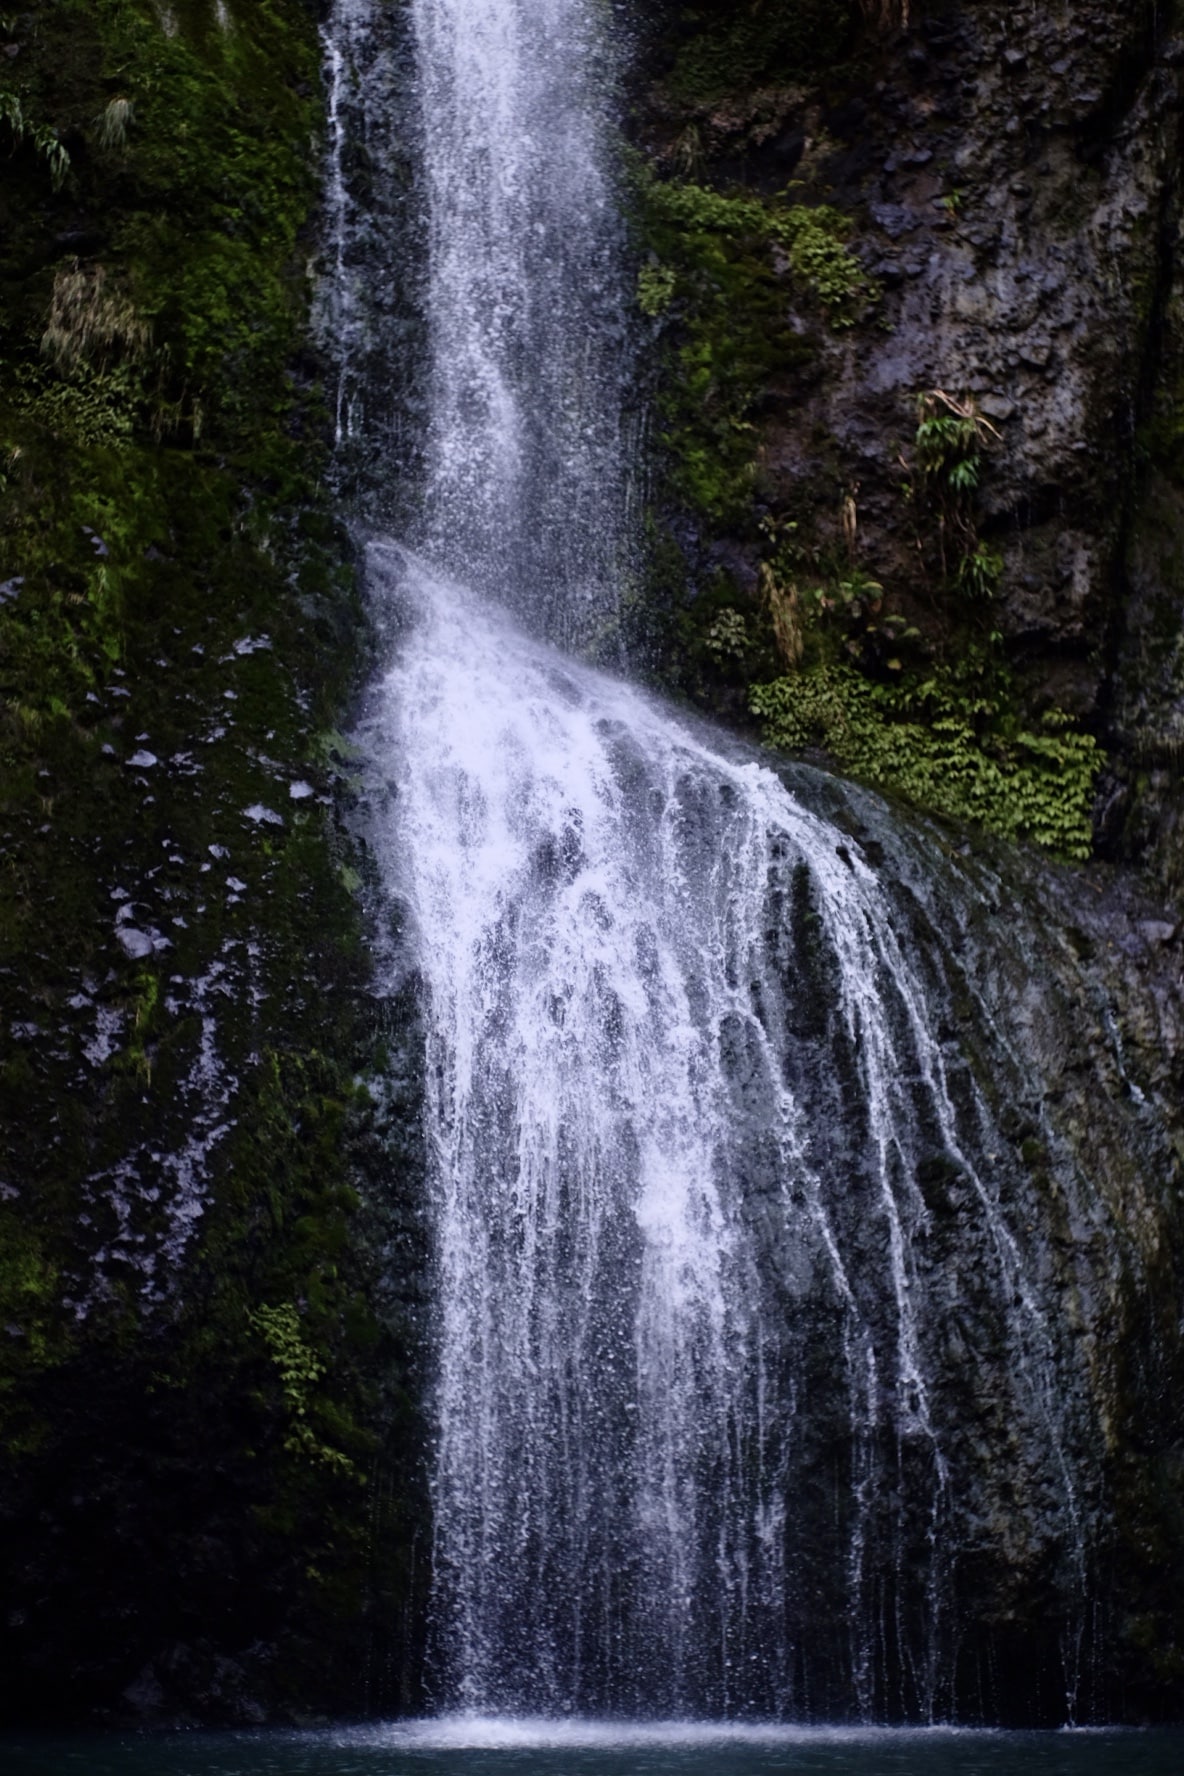 Kitekite falls, Piha, New Zealand